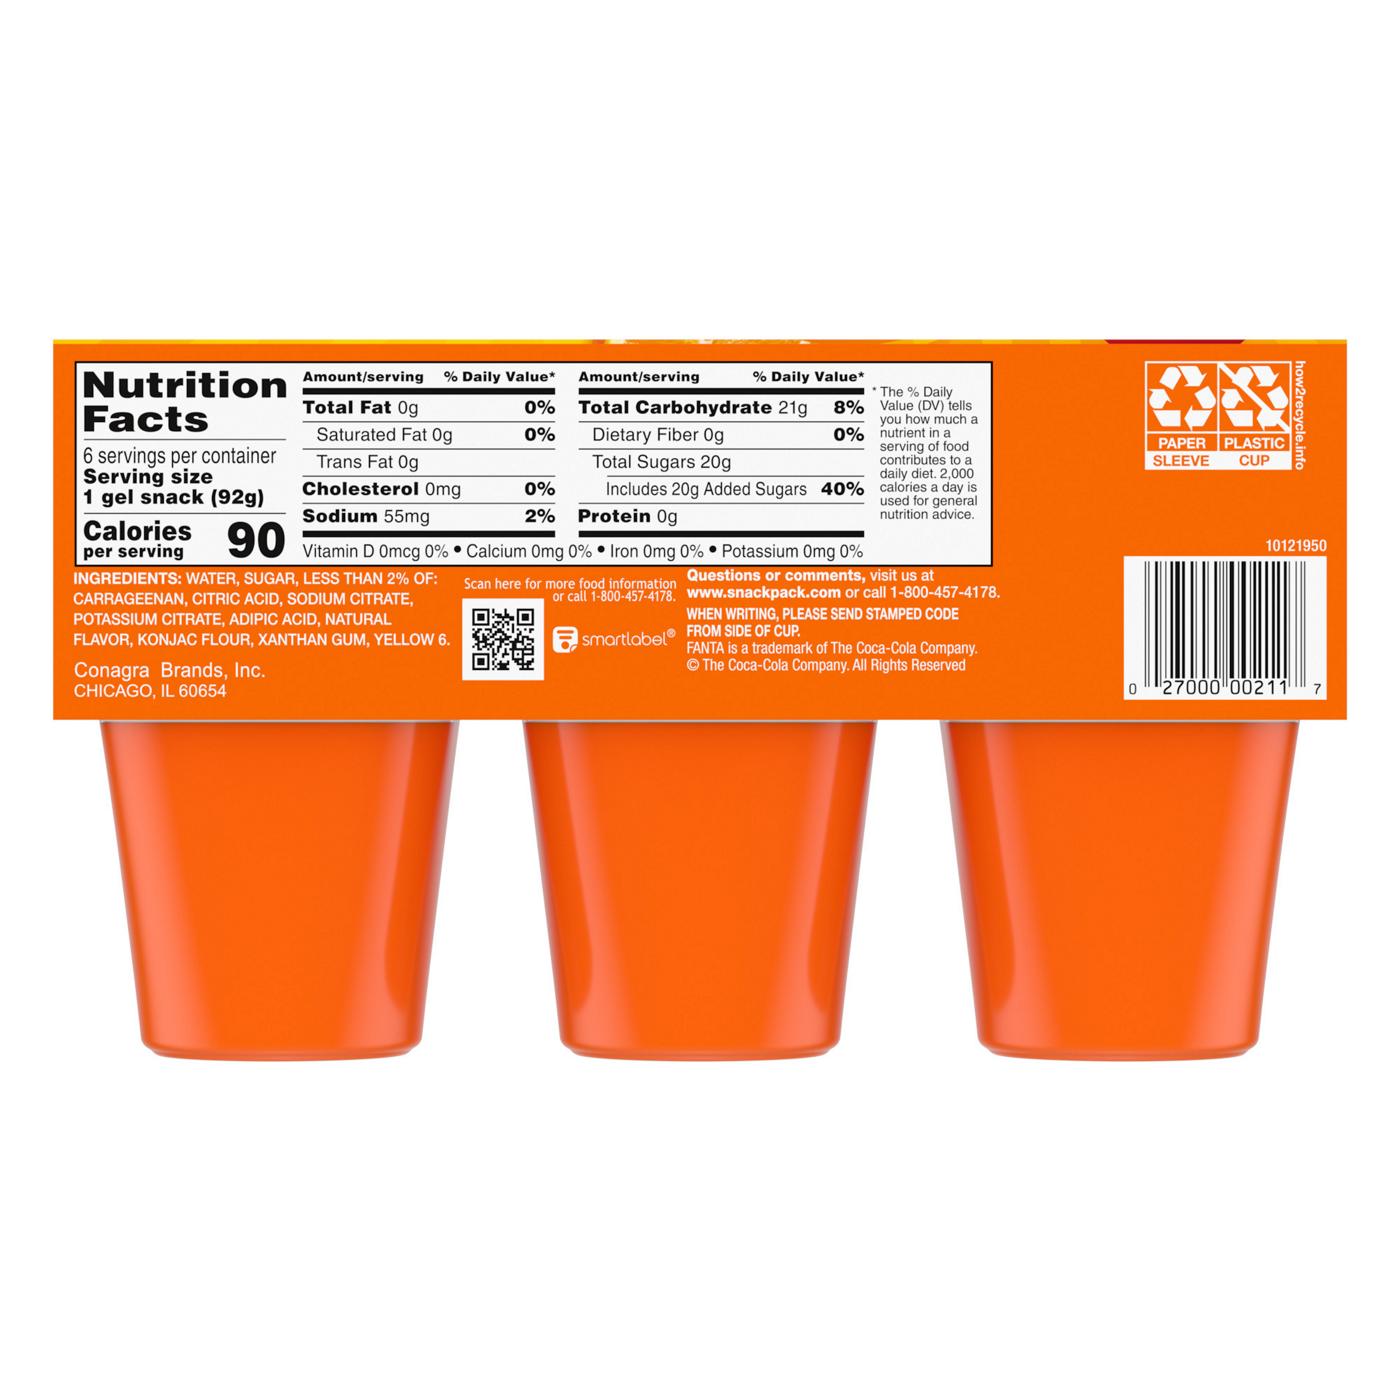 Snack Pack Fanta Orange Juicy Gels Cups; image 7 of 7